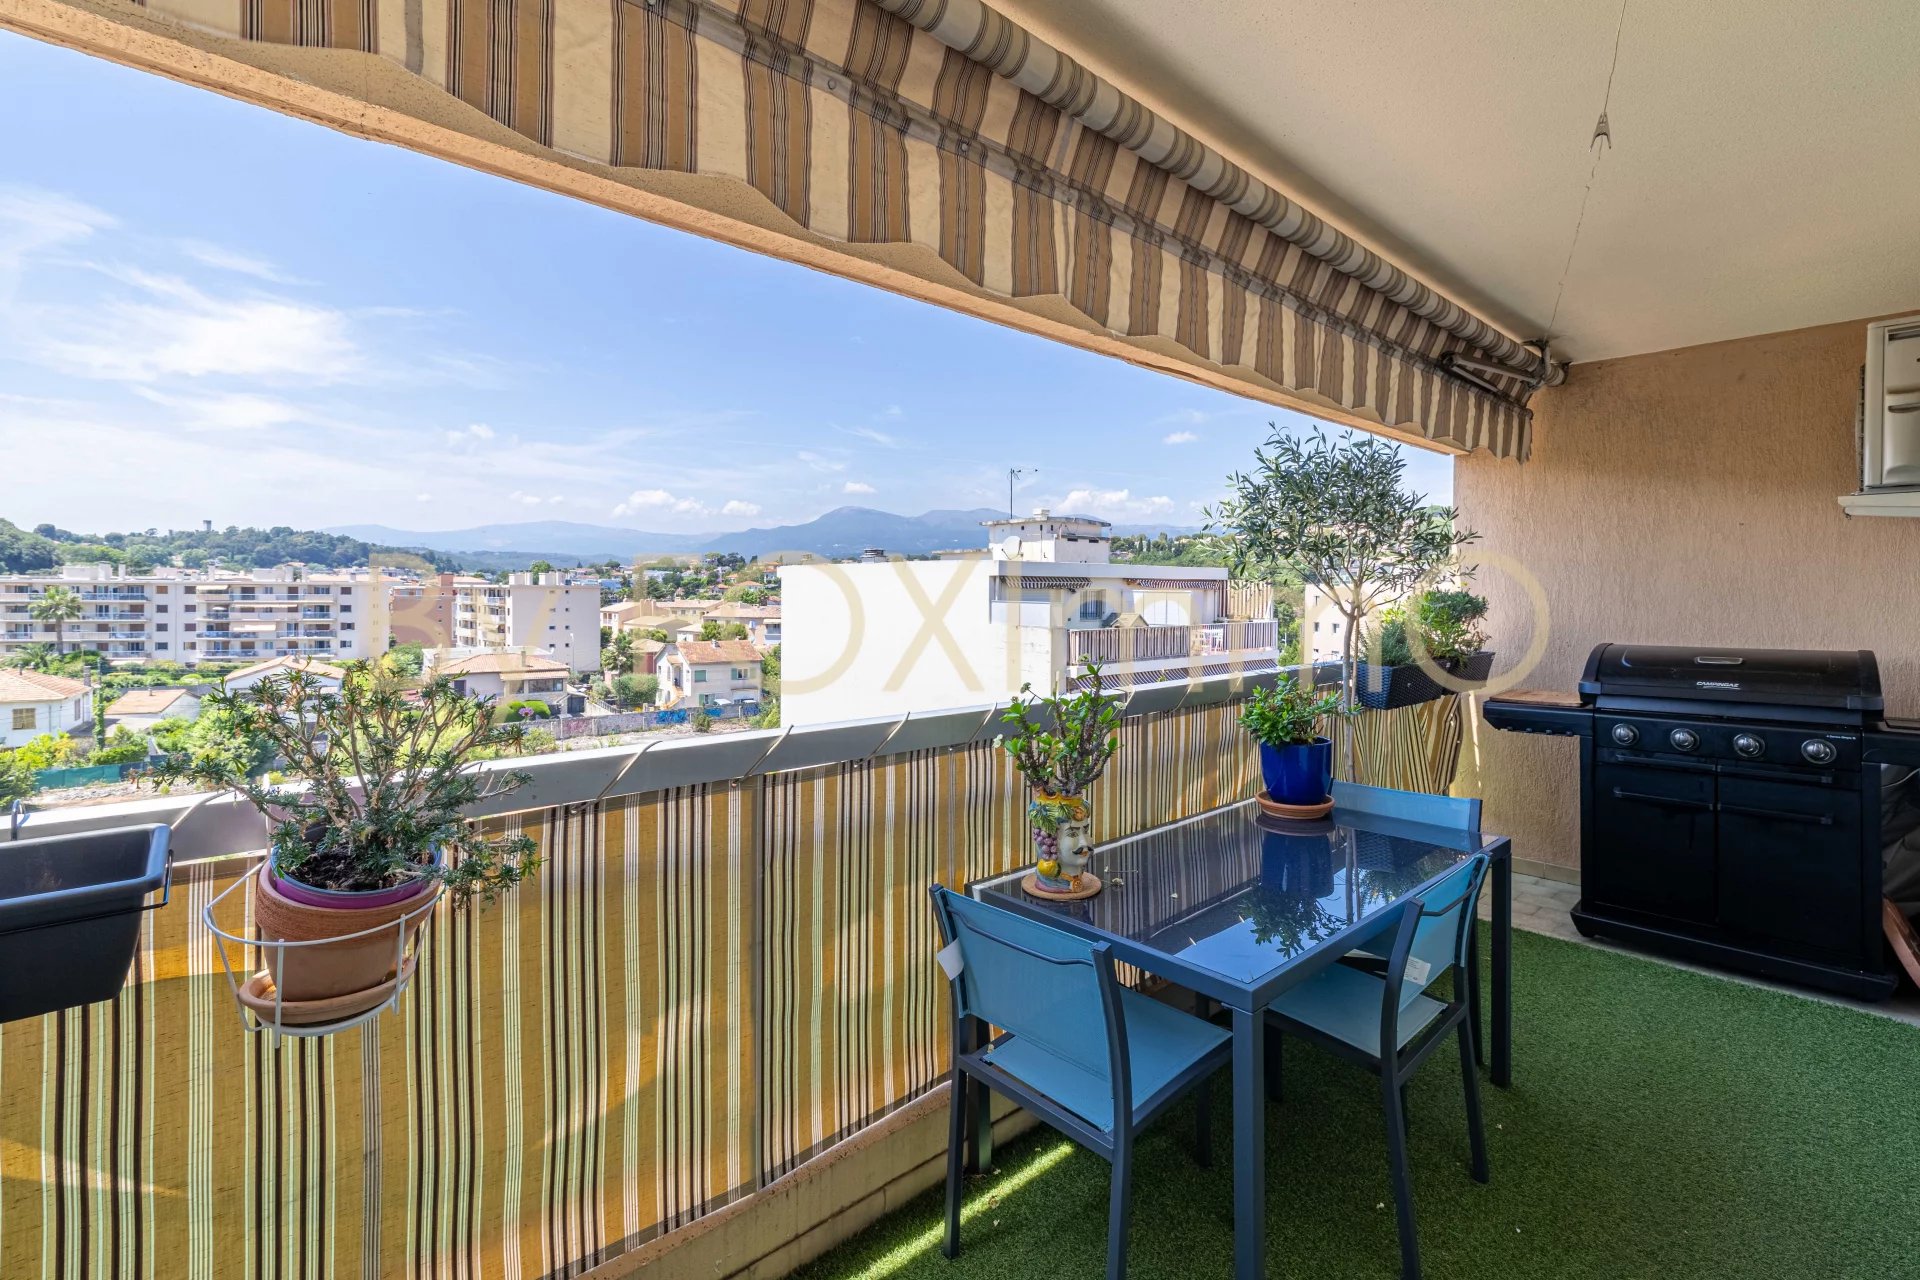 Sulla Costa Azzurra, magnifico appartamento all'ultimo piano interamente rinnovato con terrazza, cantina e parcheggio interrato